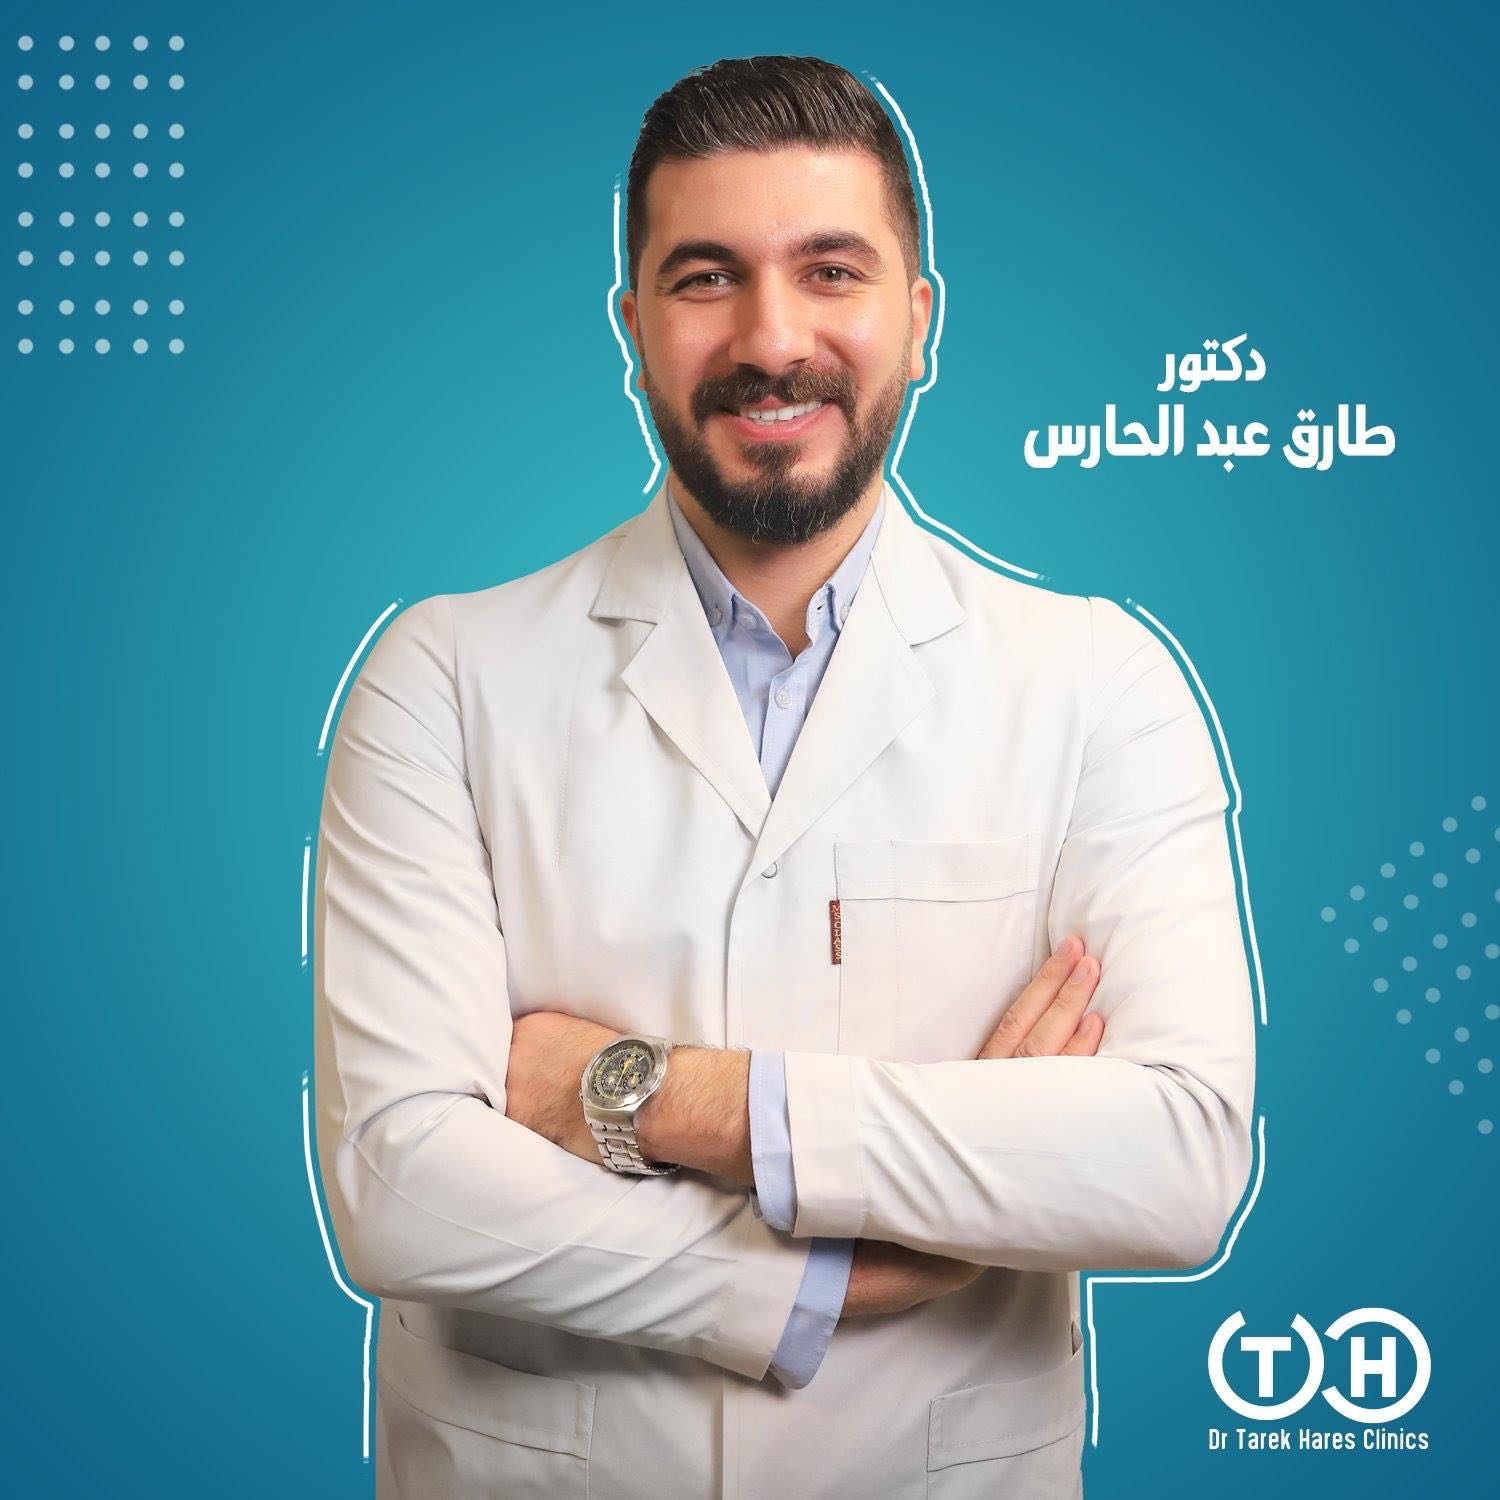 دكتور طارق عبد الحارس